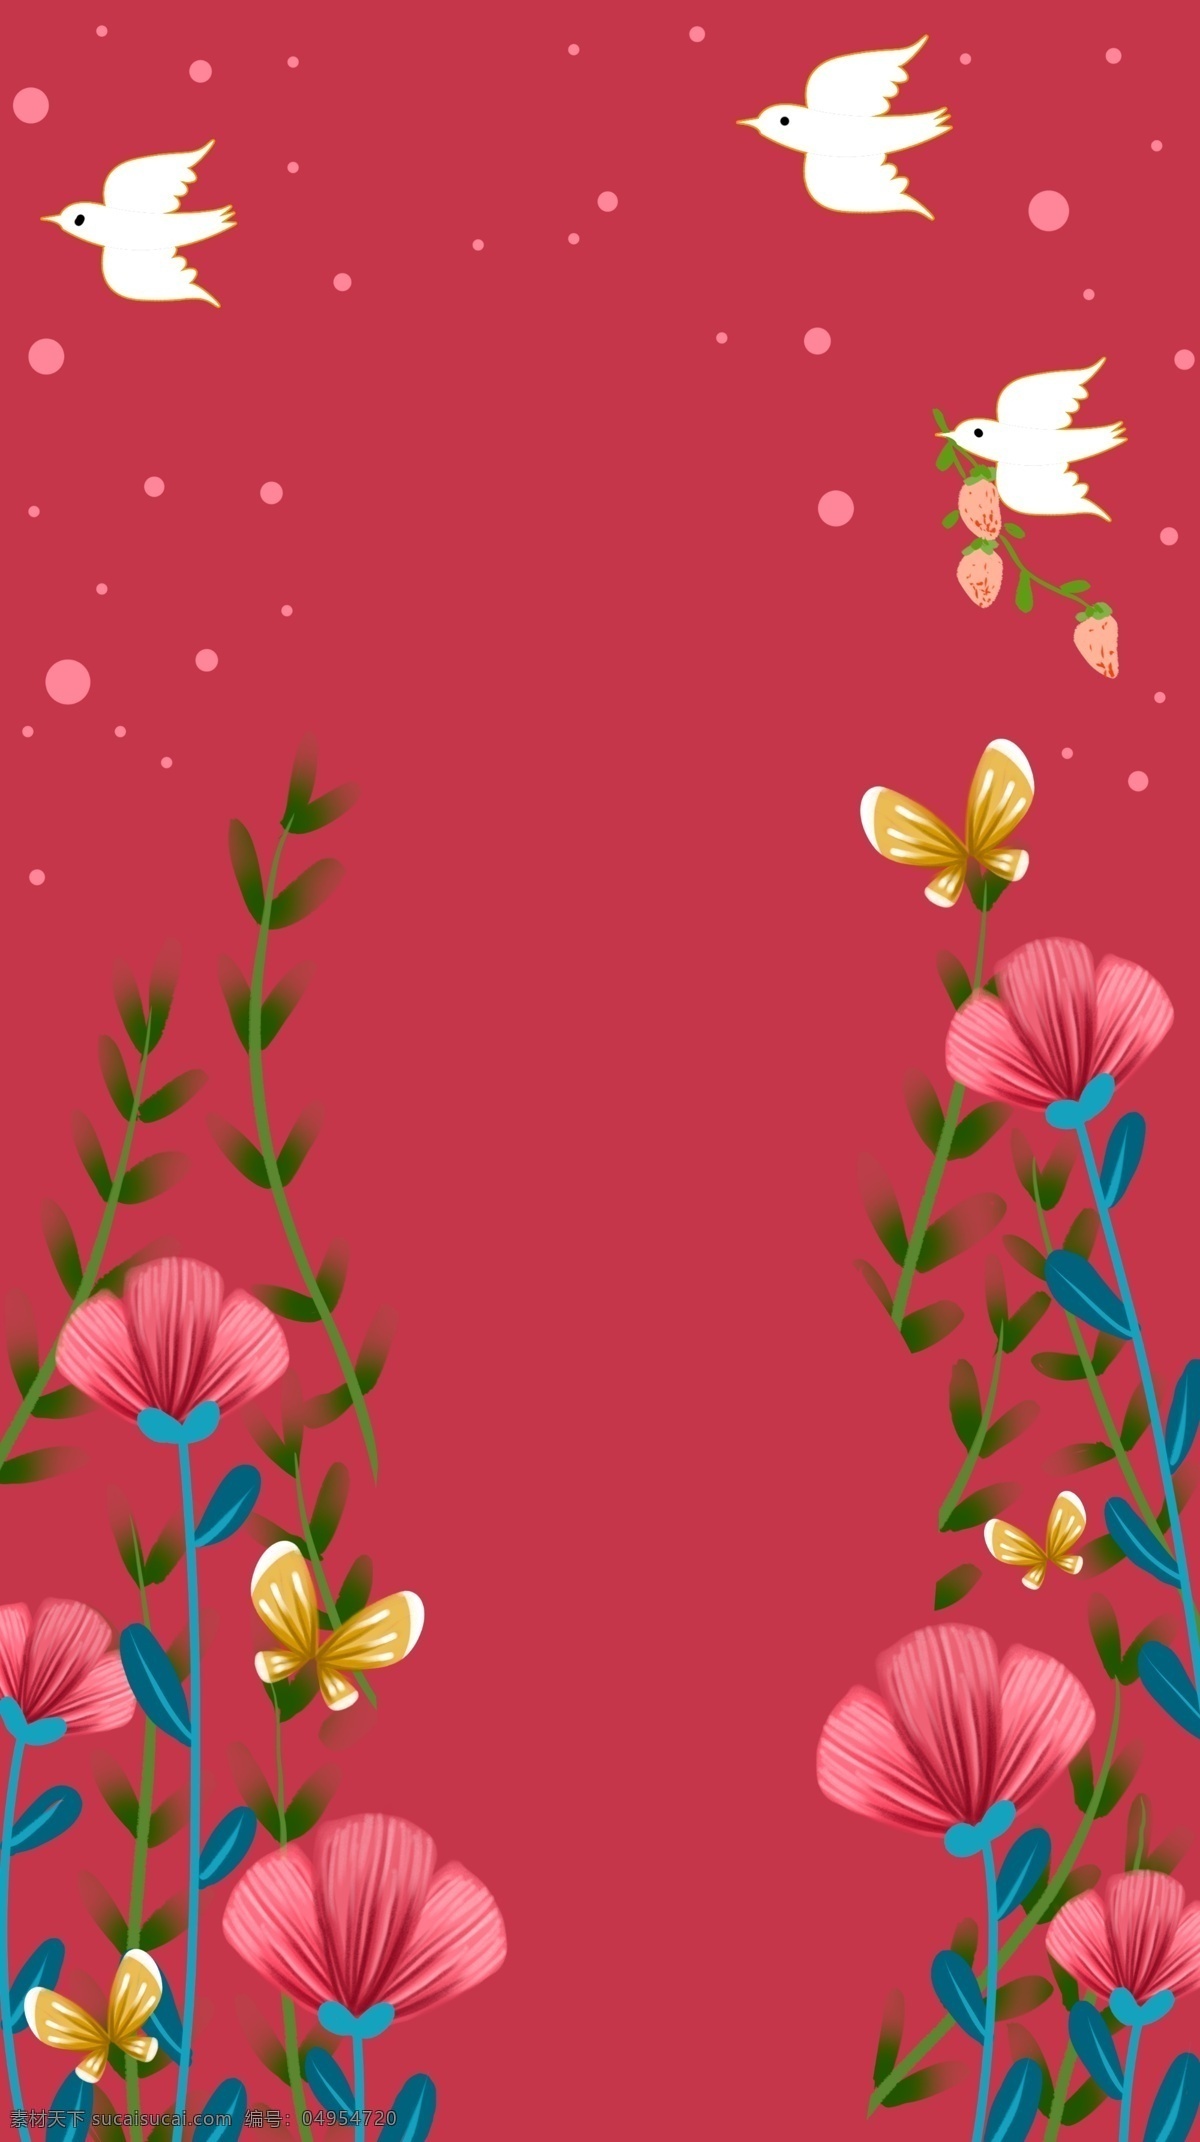 红色 唯美 花卉 植物 插画 背景 红色背景 唯美背景 花卉植物 广告背景 背景素材 背景展板 彩色背景